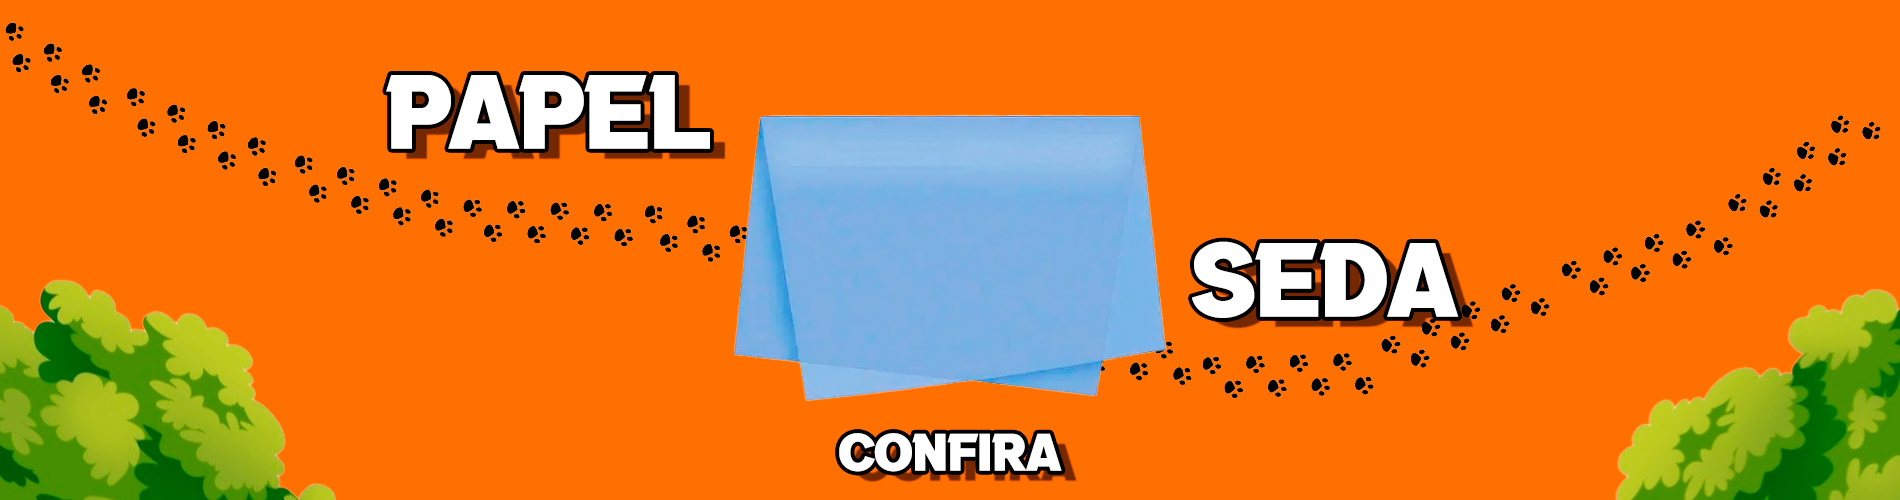 Banner Papel Seda Confeitaria - Desktop